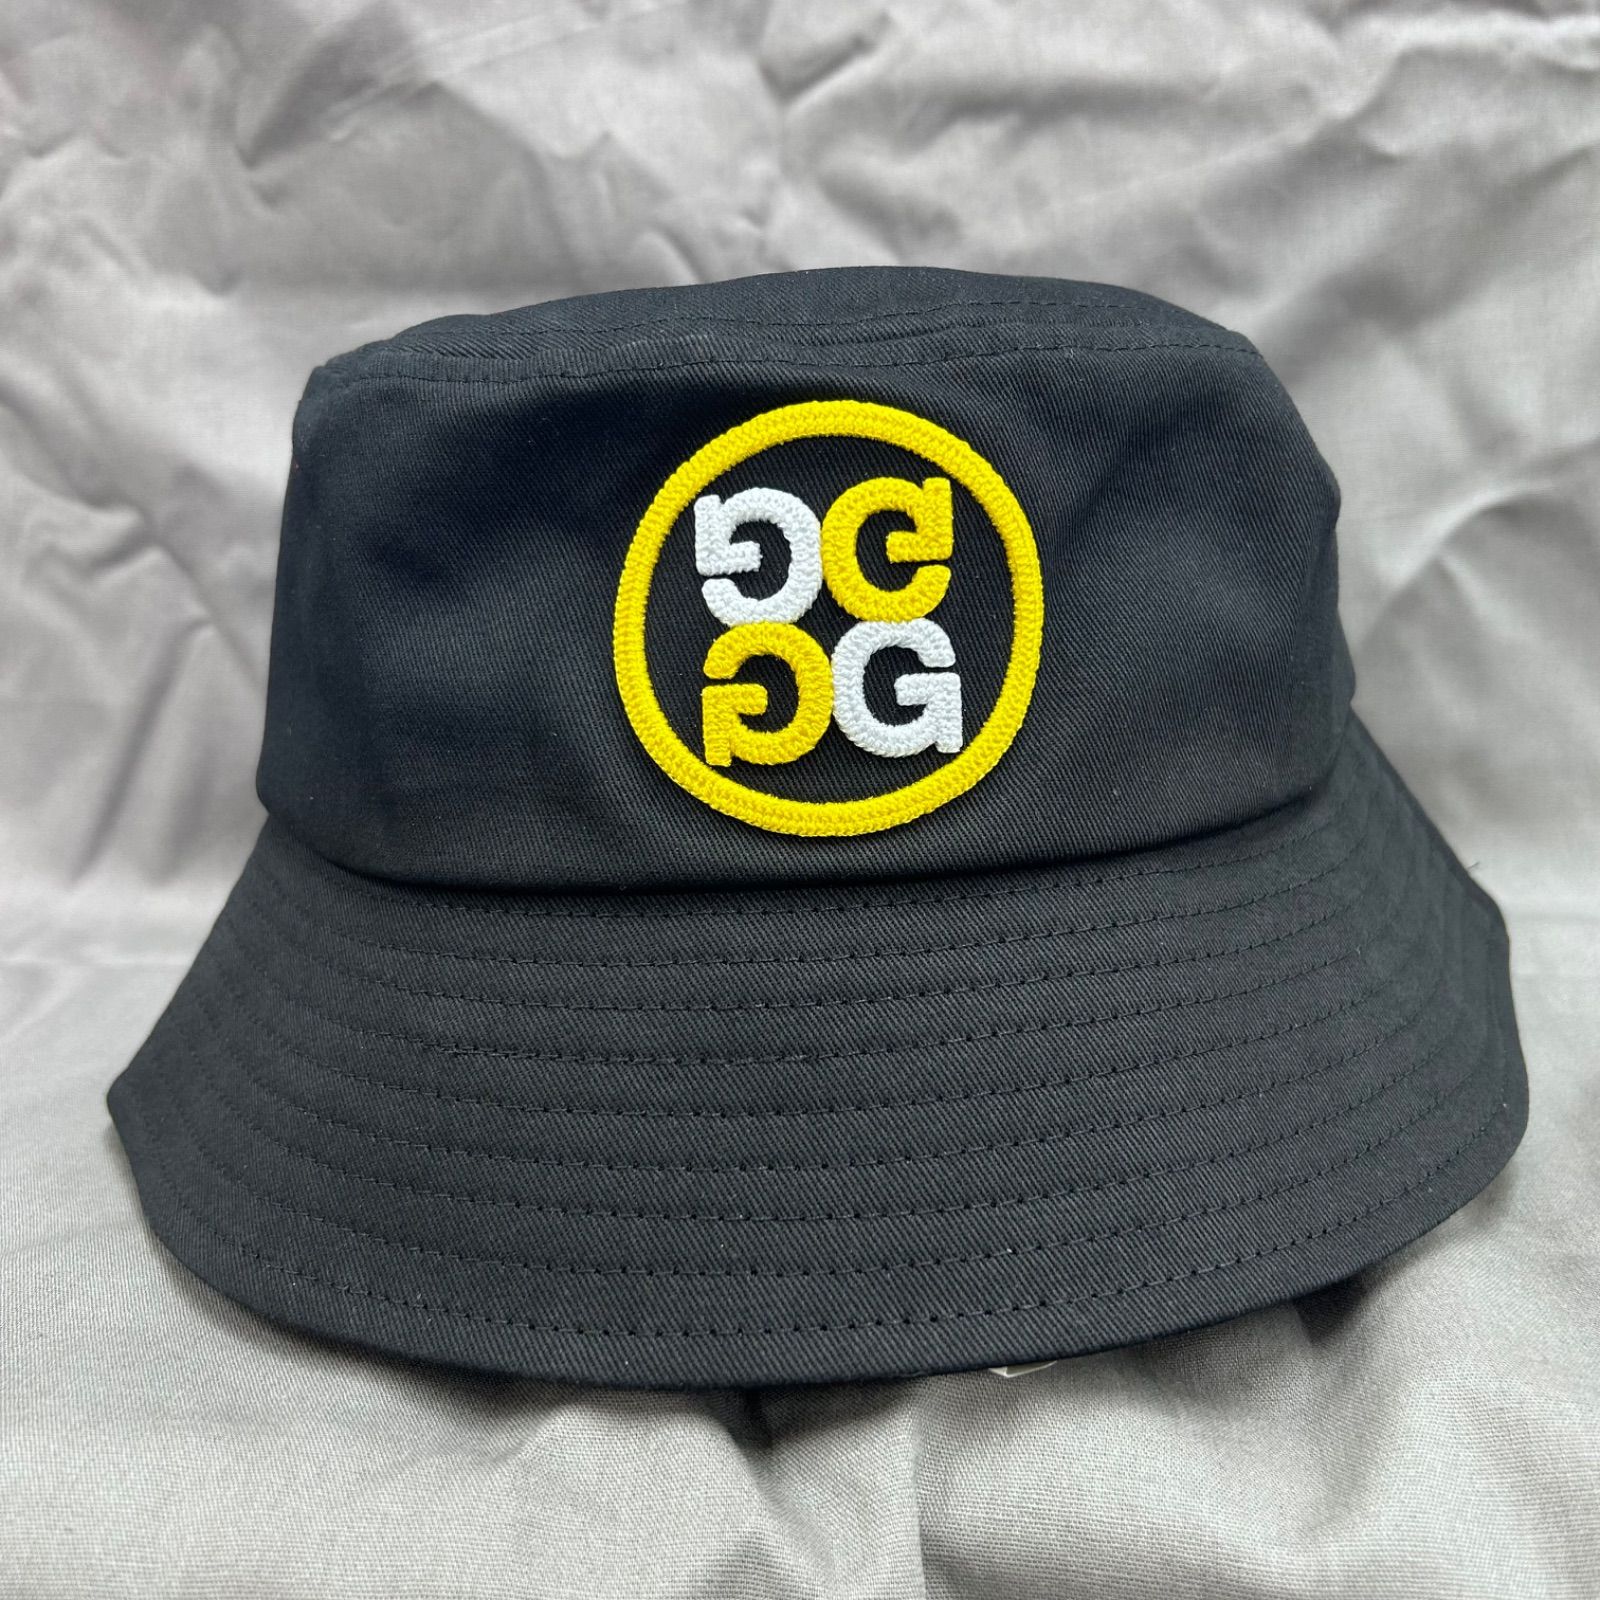 G/FORE ジーフォア バケットハット バケハ ハット 帽子 黒 ブラック 黄色 イエロー ゴルフ シンプル かわいい レディース メンズ